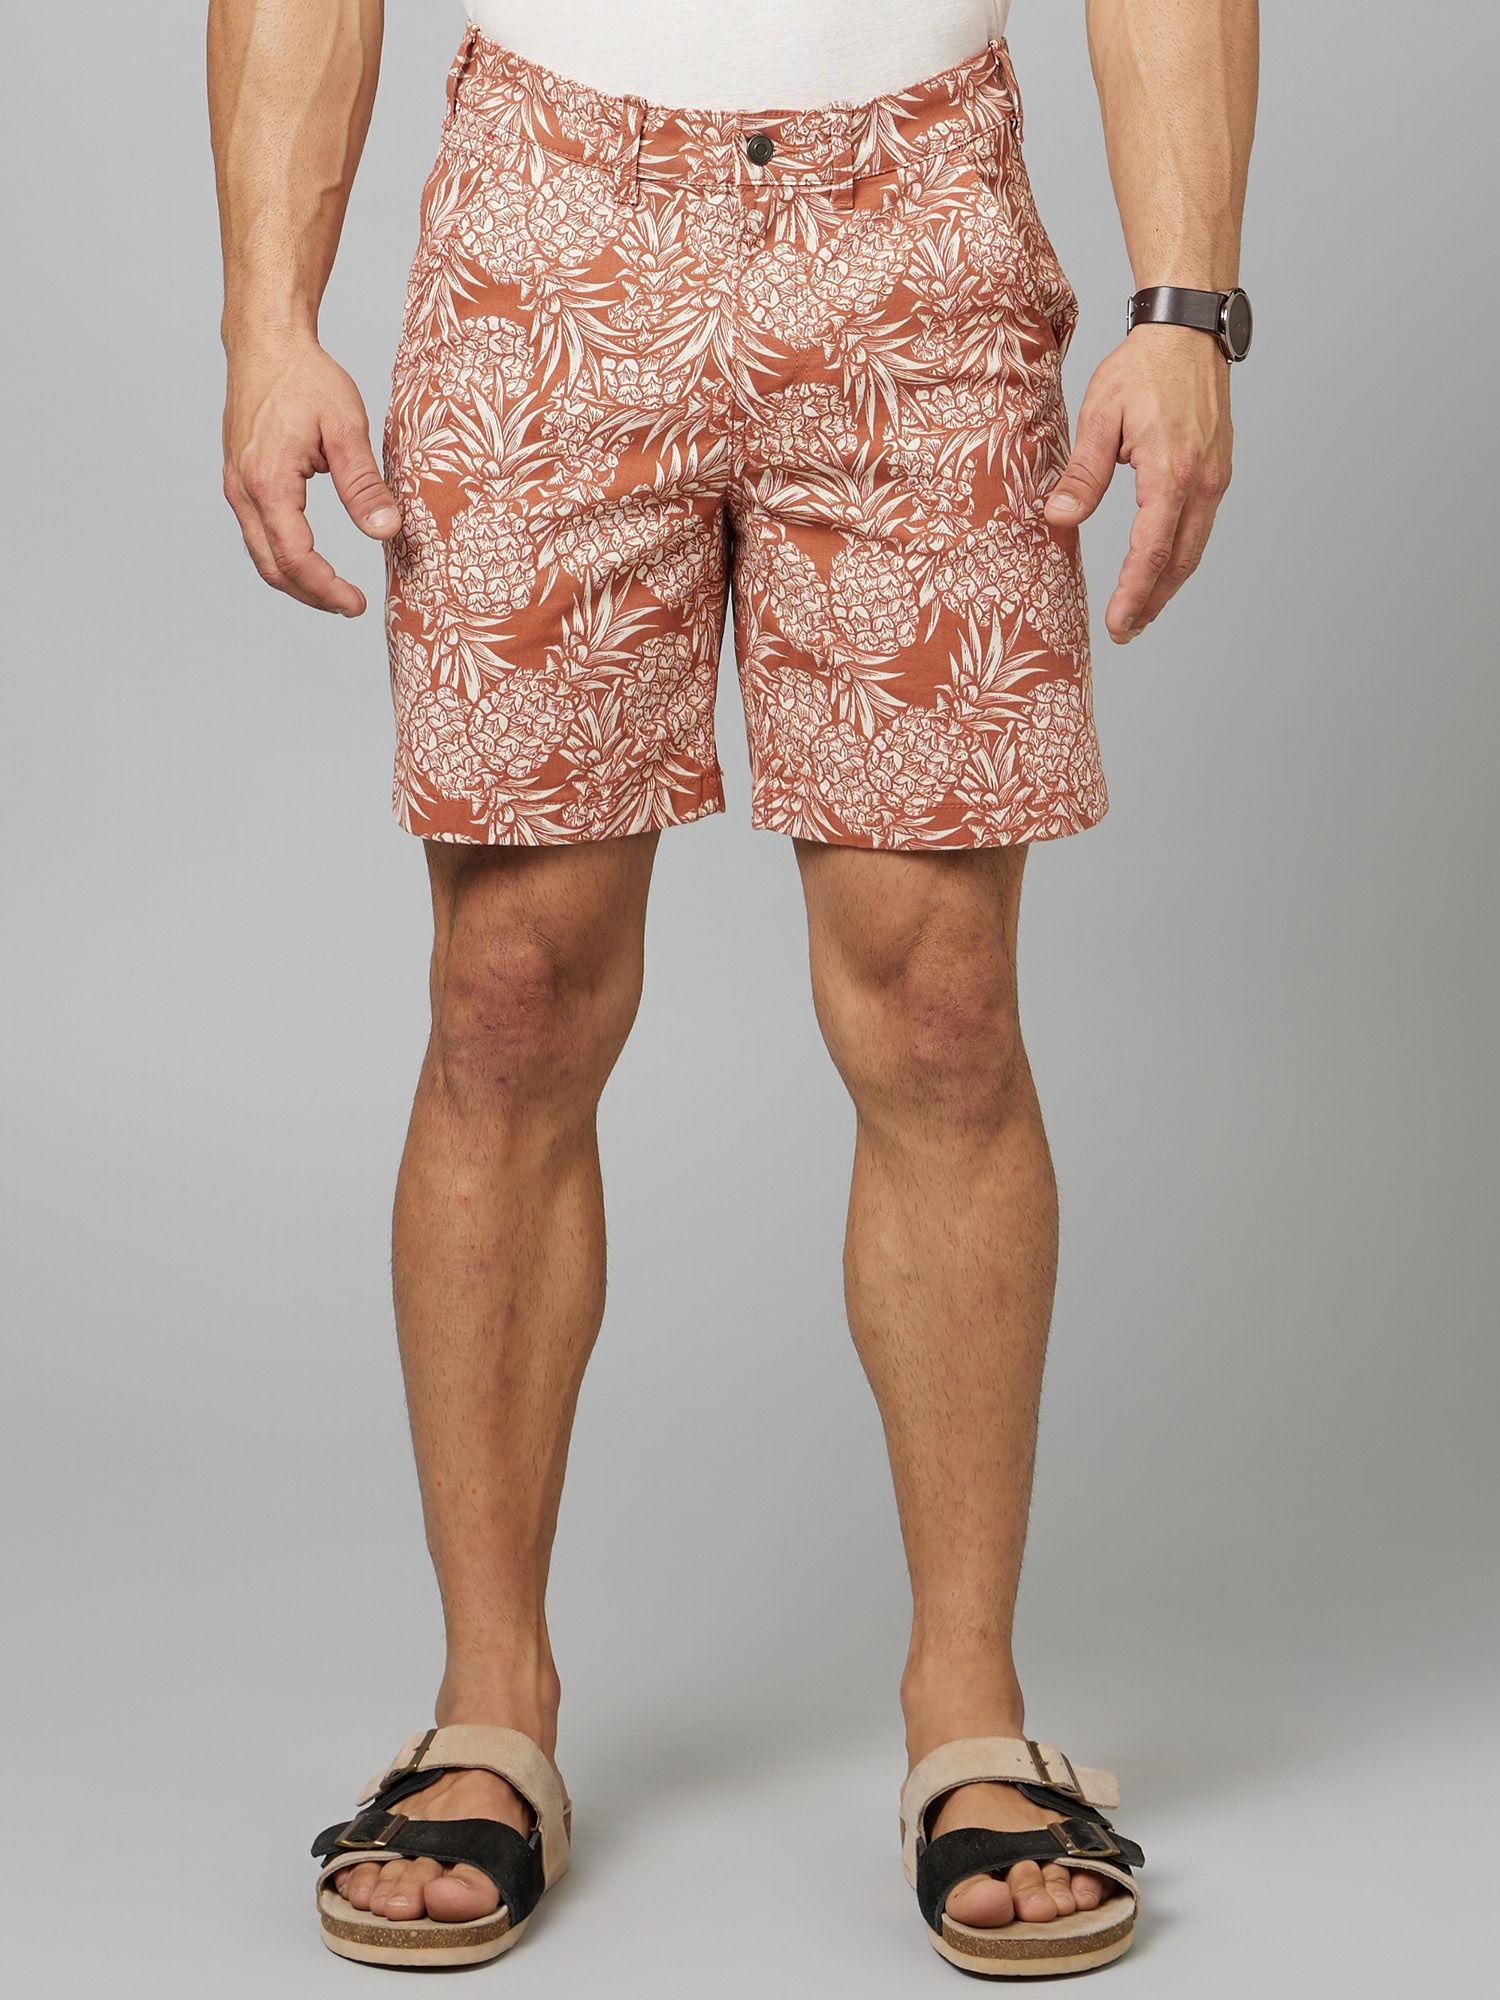 mens-orange-printed-bermuda-shorts